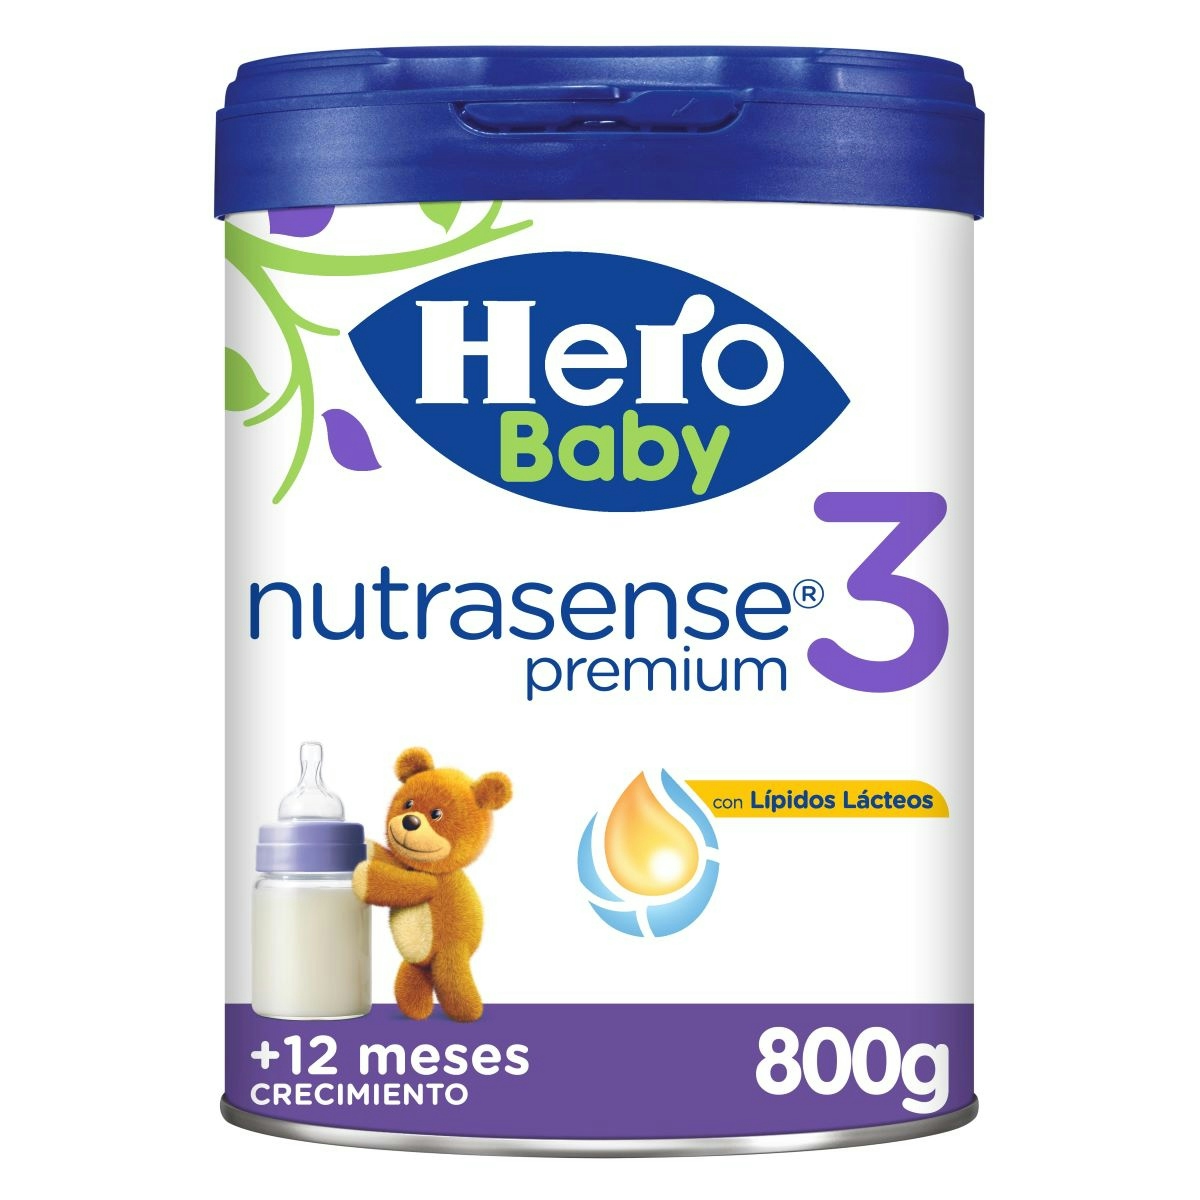 Leche Nutrasense Premium 3 Hero Baby 800 g